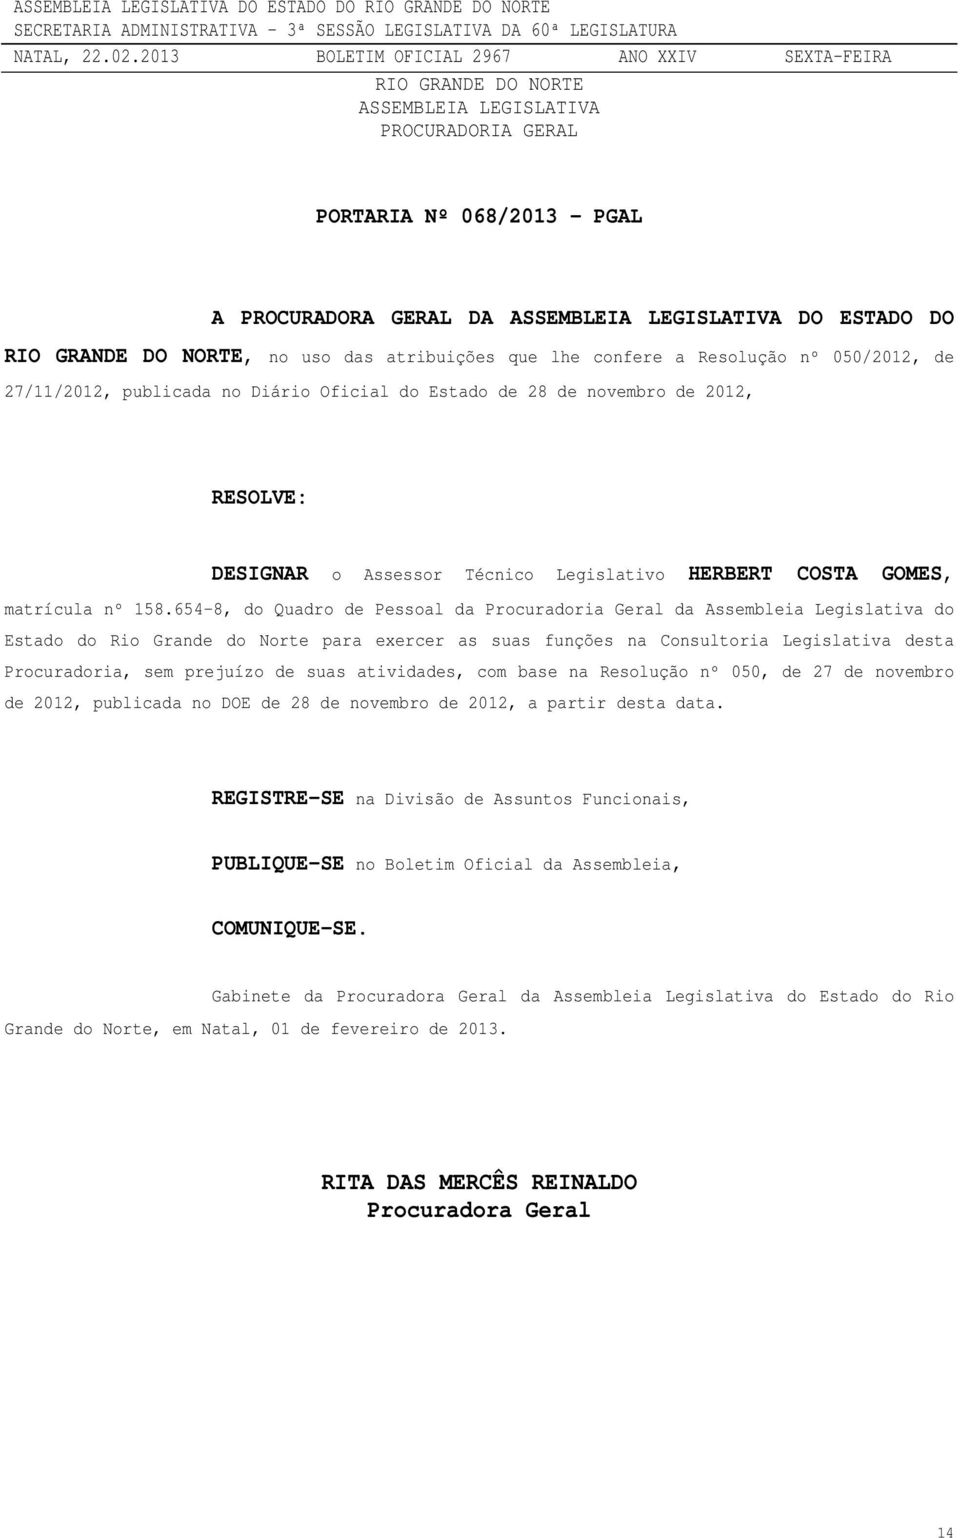 654-8, do Quadro de Pessoal da Procuradoria Geral da Assembleia Legislativa do Estado do Rio Grande do Norte para exercer as suas funções